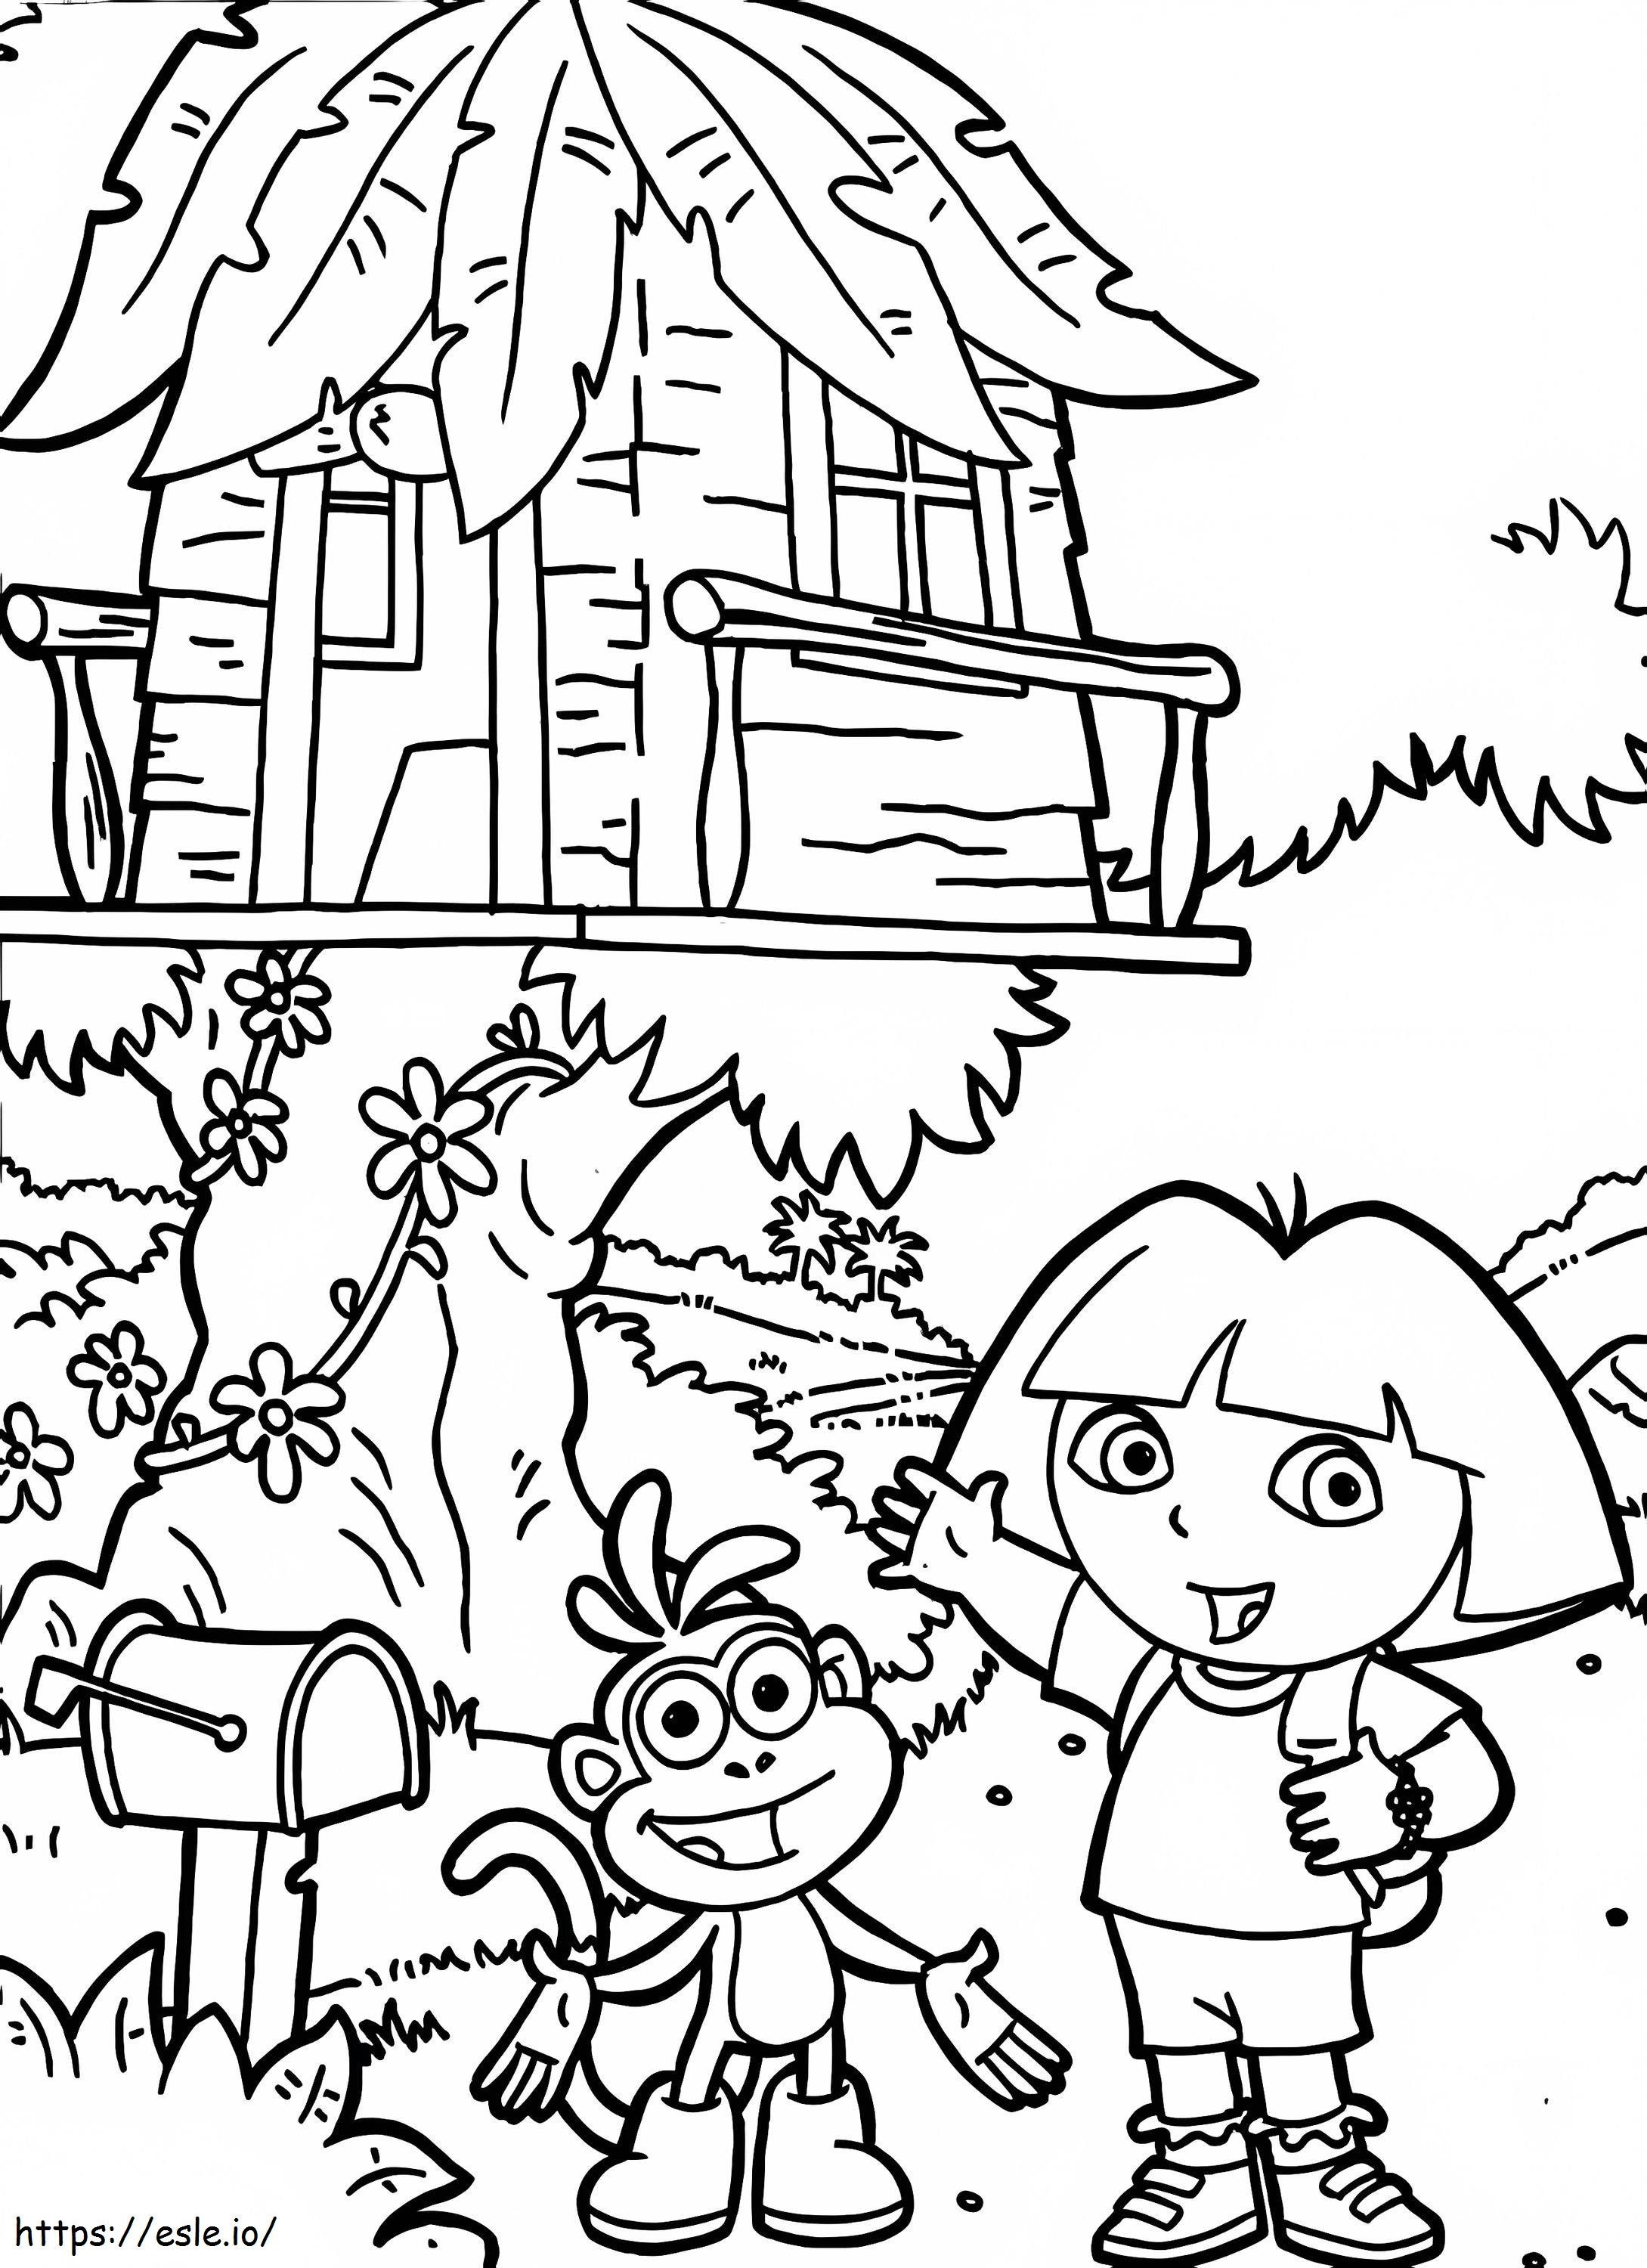 Dora e la casa sull'albero da colorare